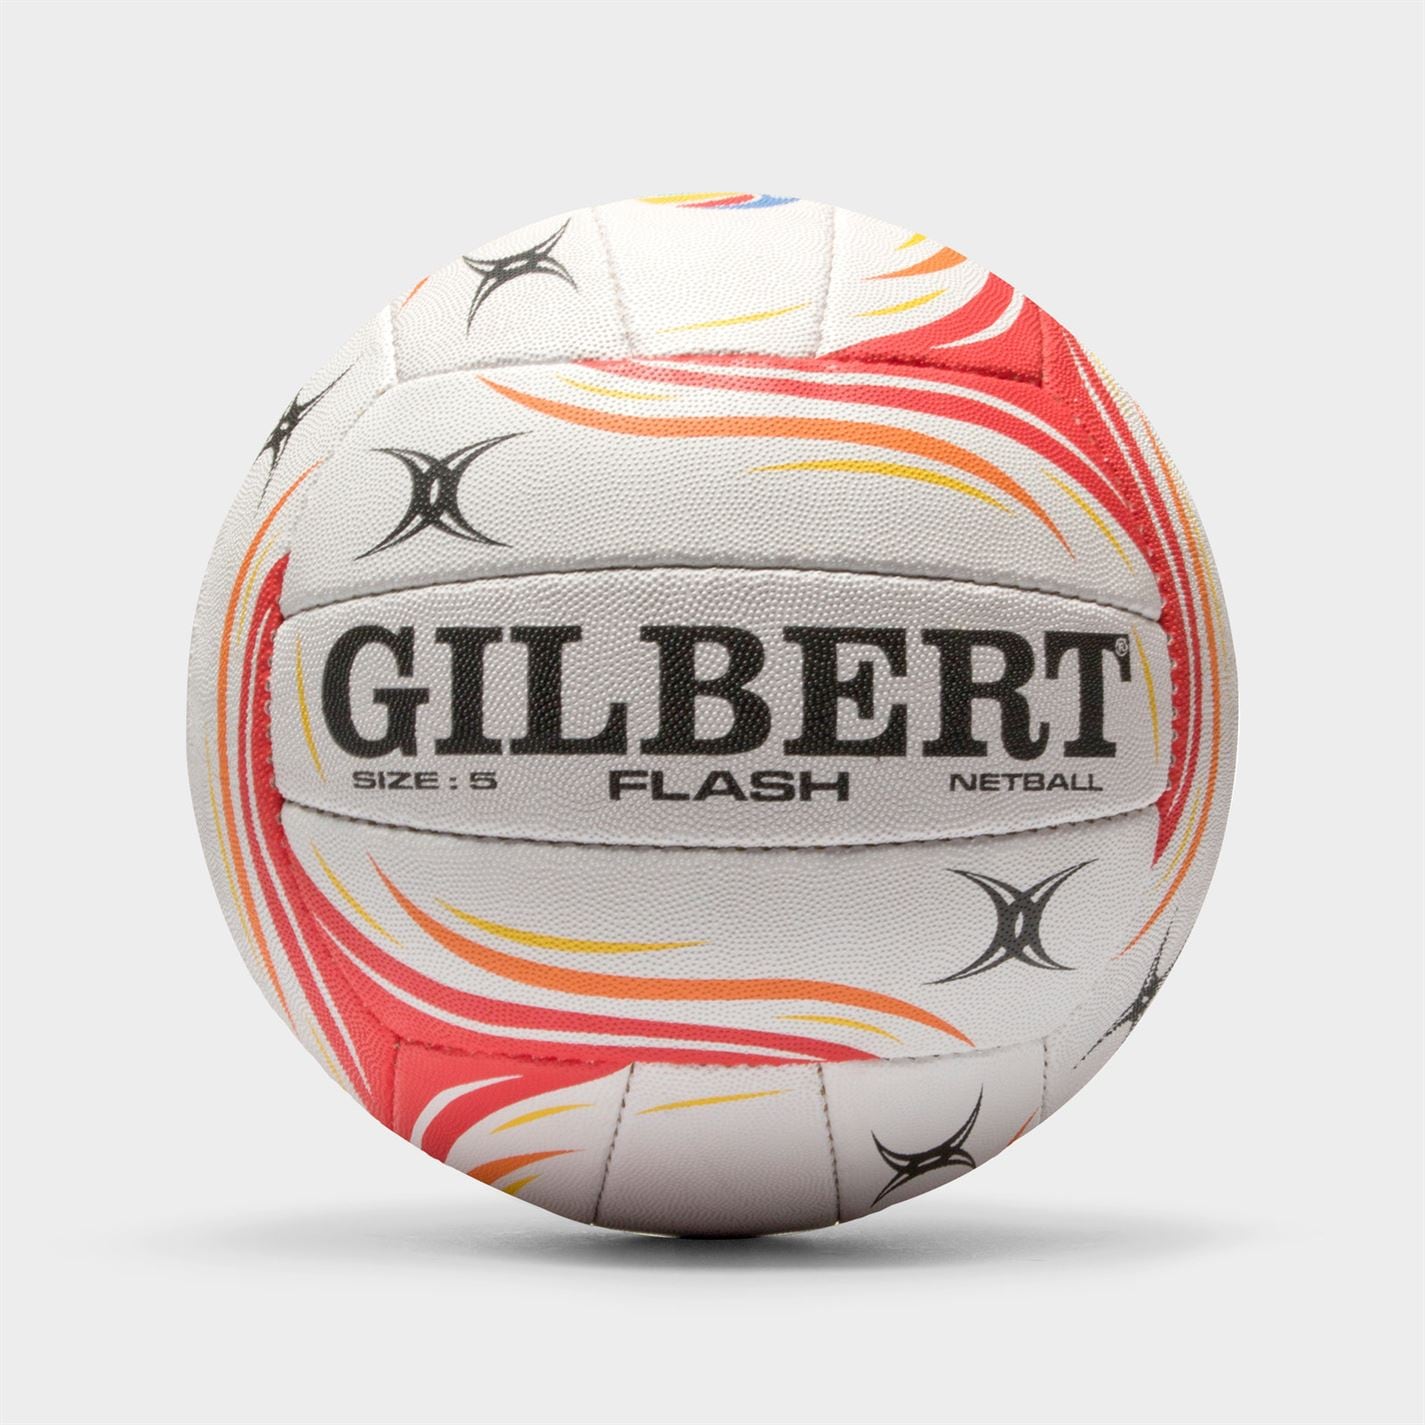 Gilbert Flash Netball